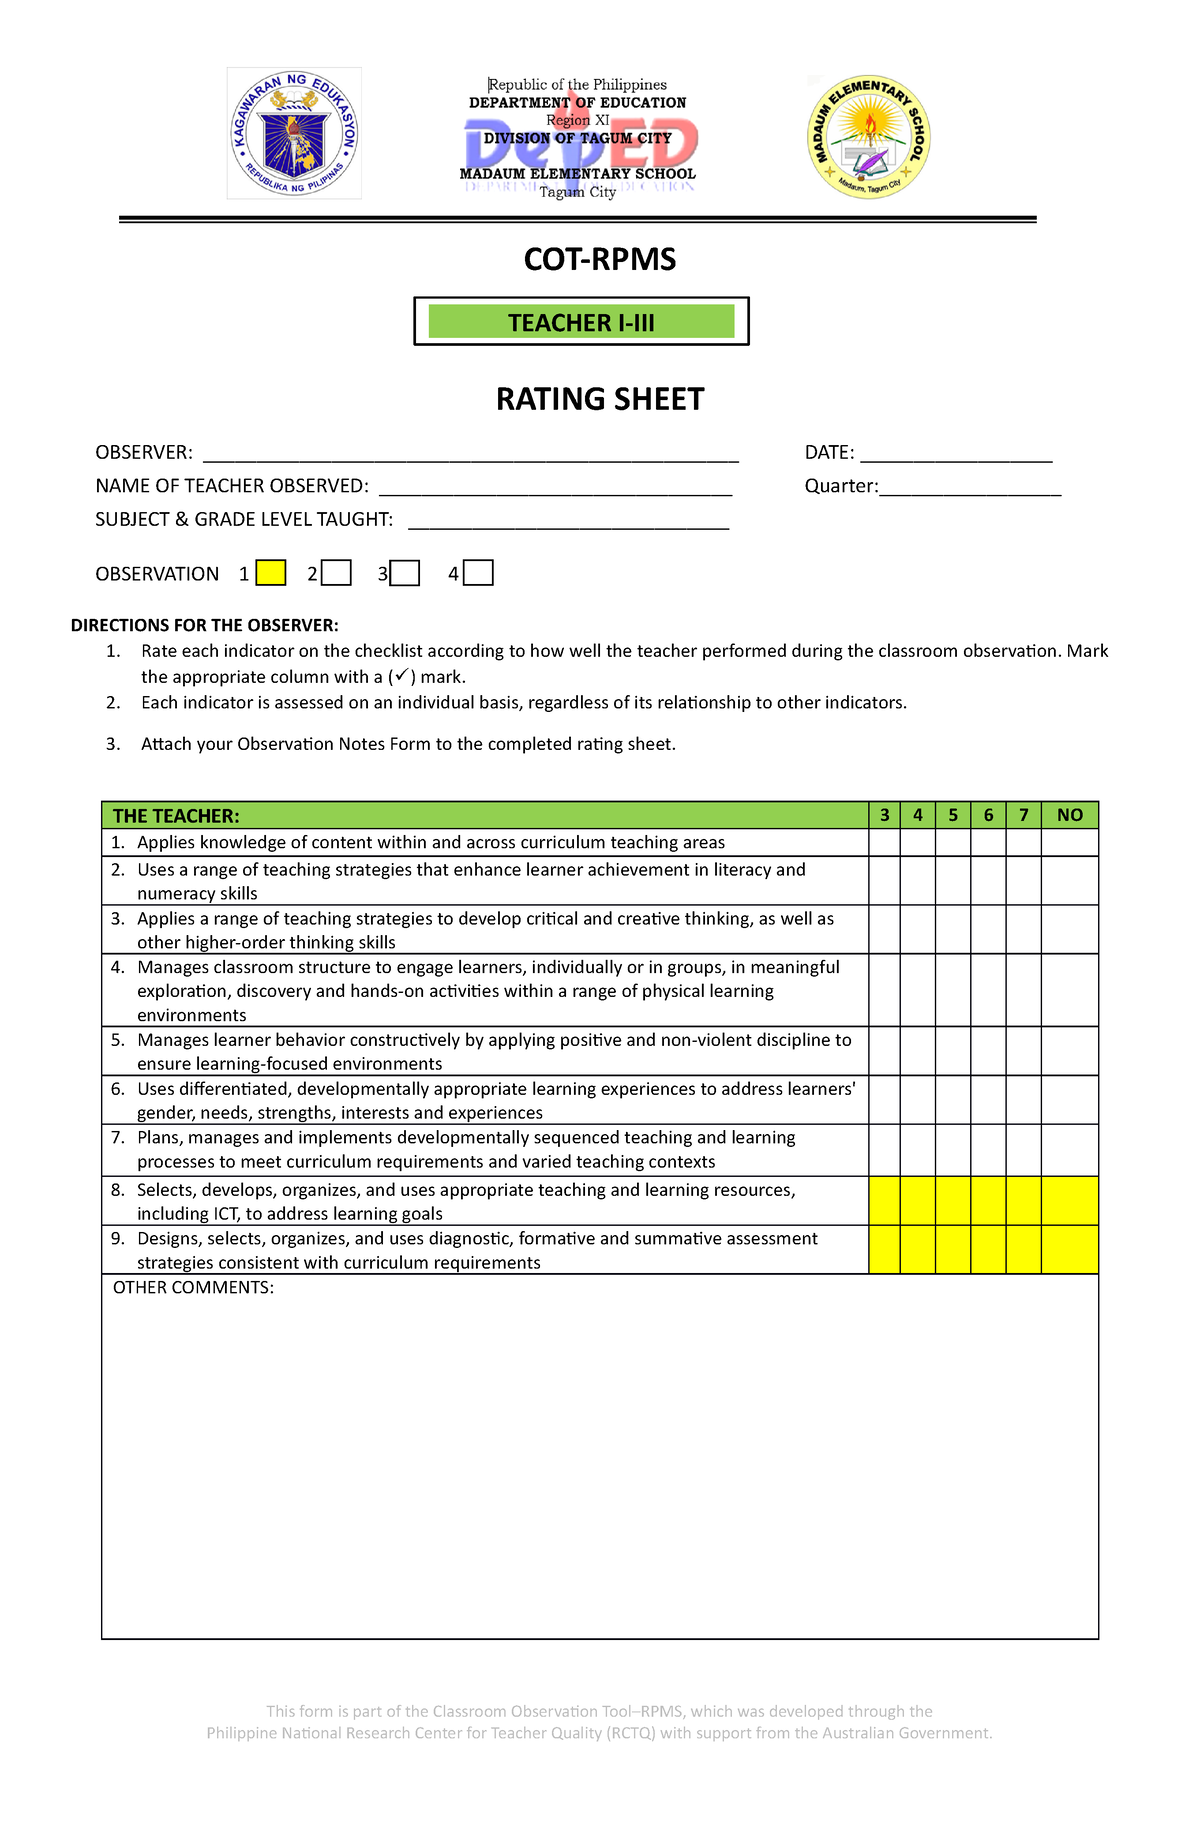 1st-rating-sheet-teacher-i-iii-cot-rpms-rating-sheet-observer-studocu